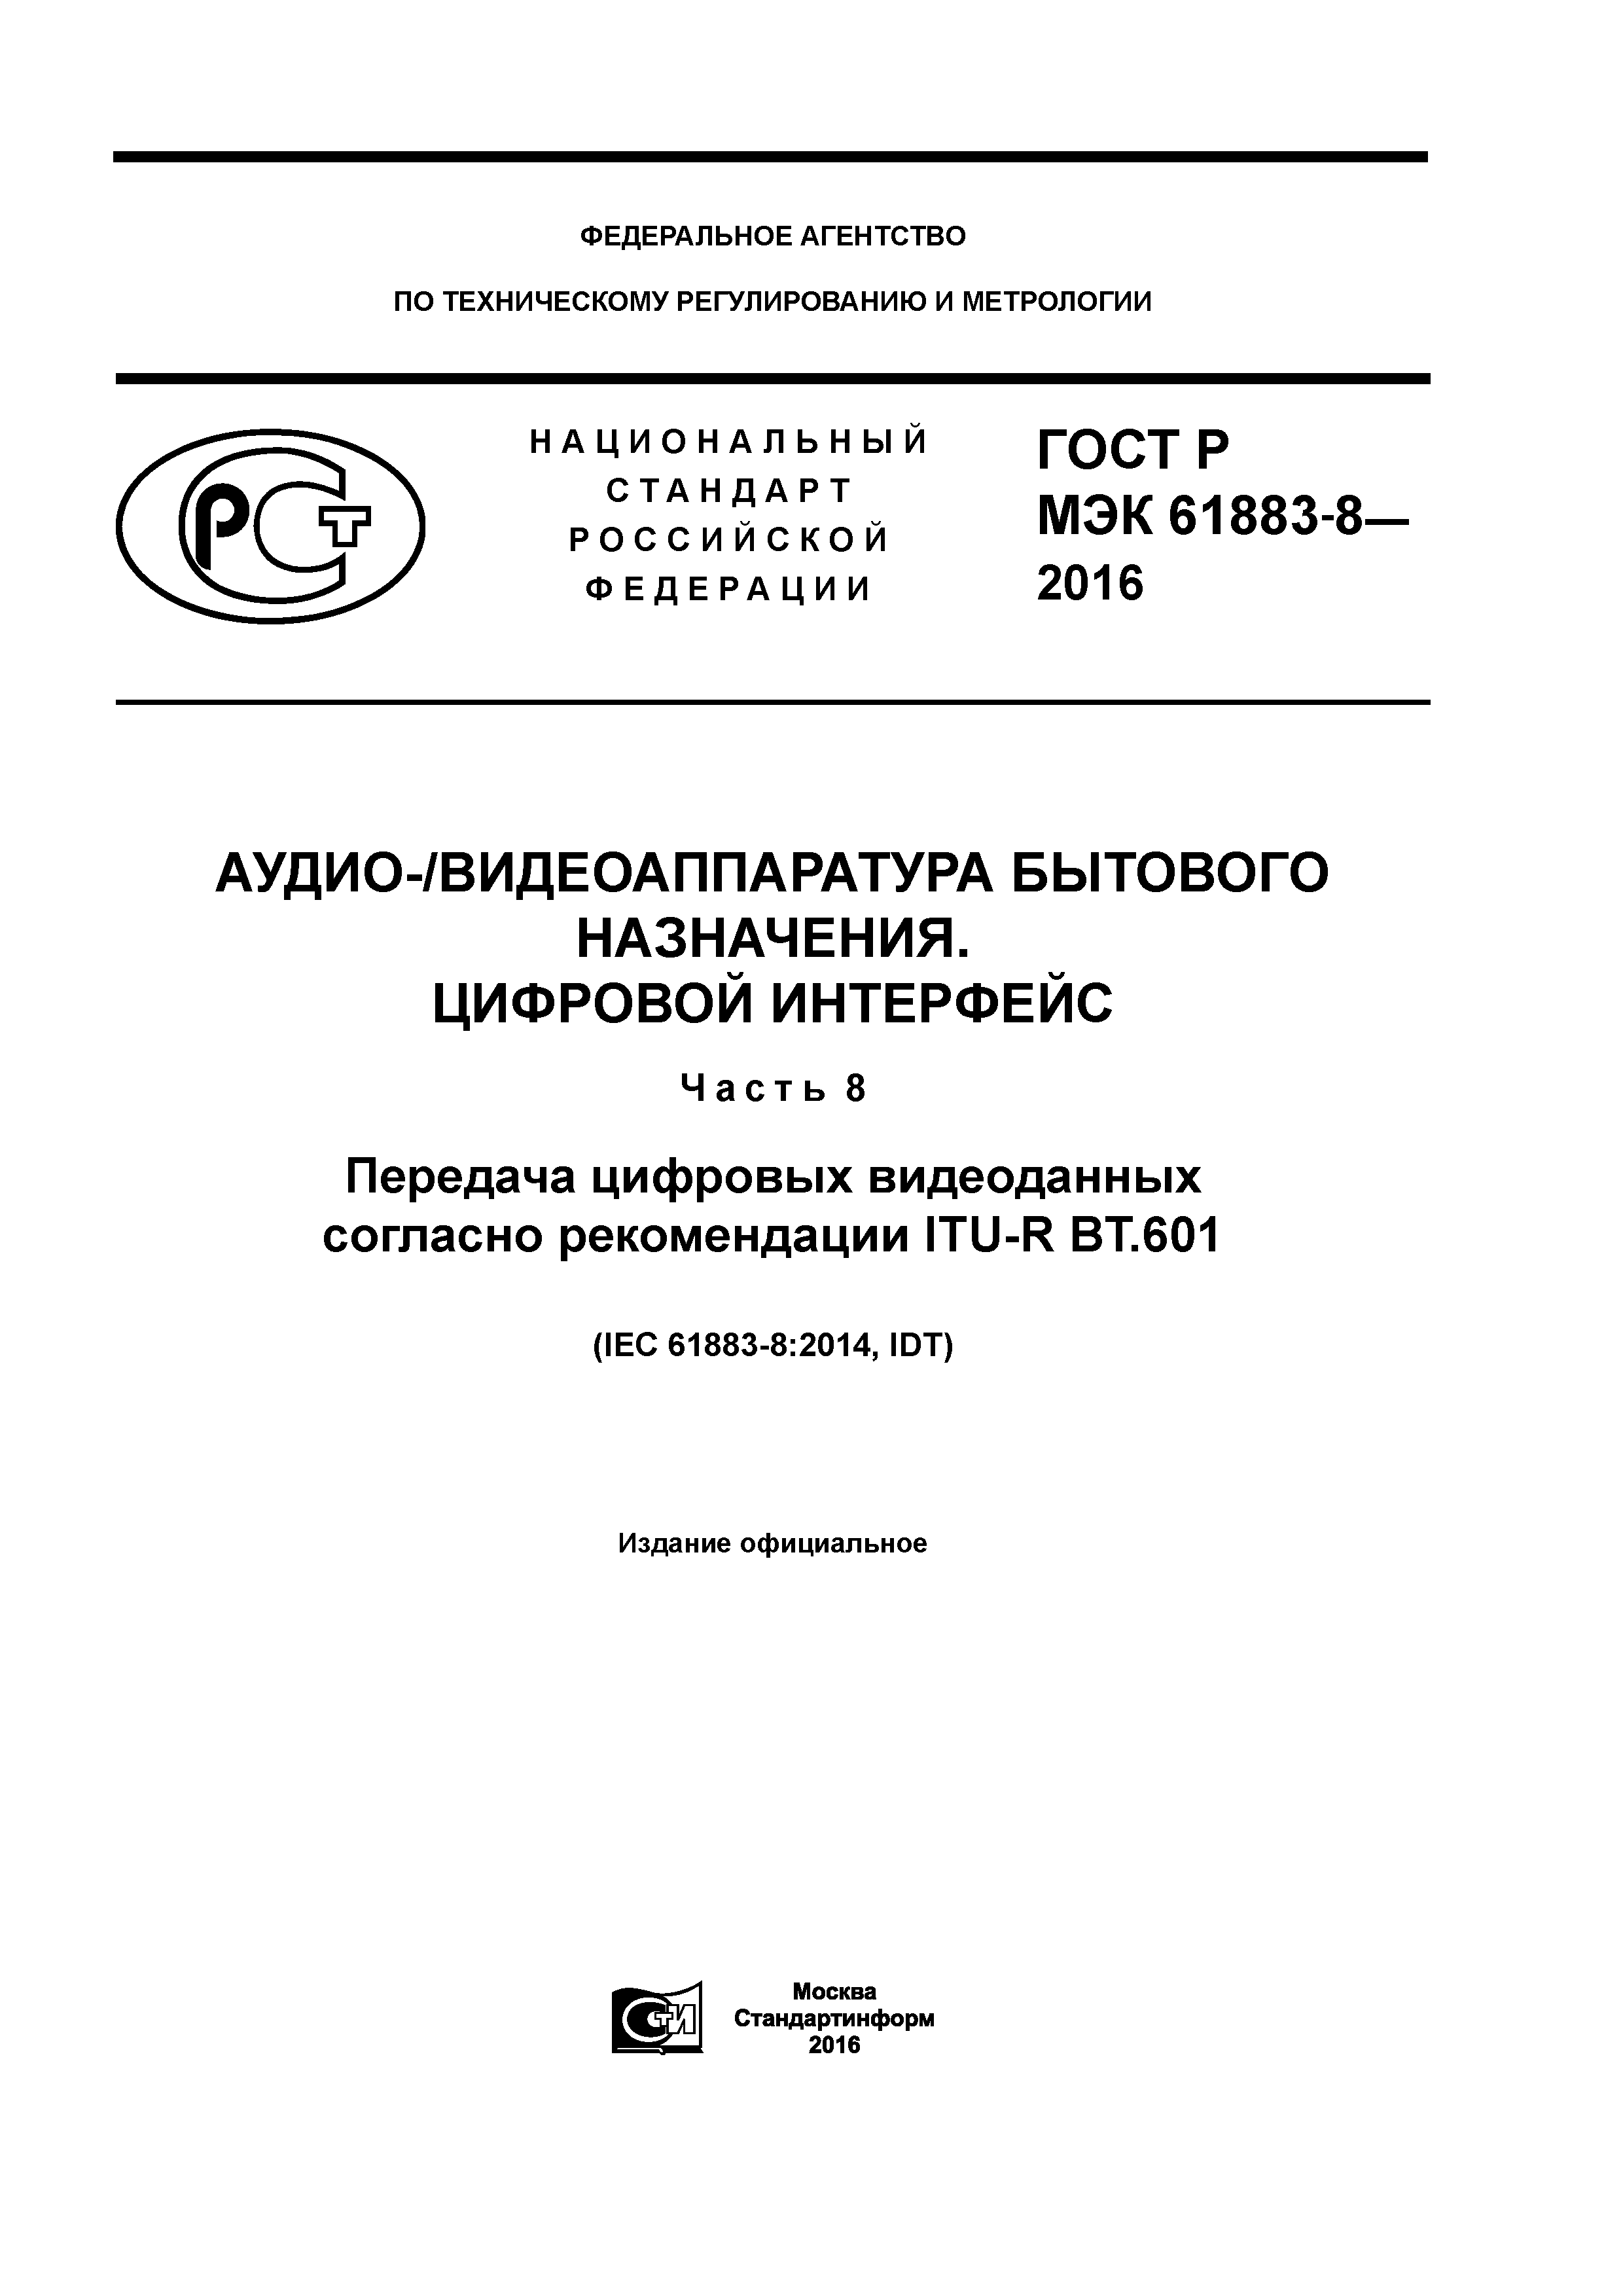 ГОСТ Р МЭК 61883-8-2016